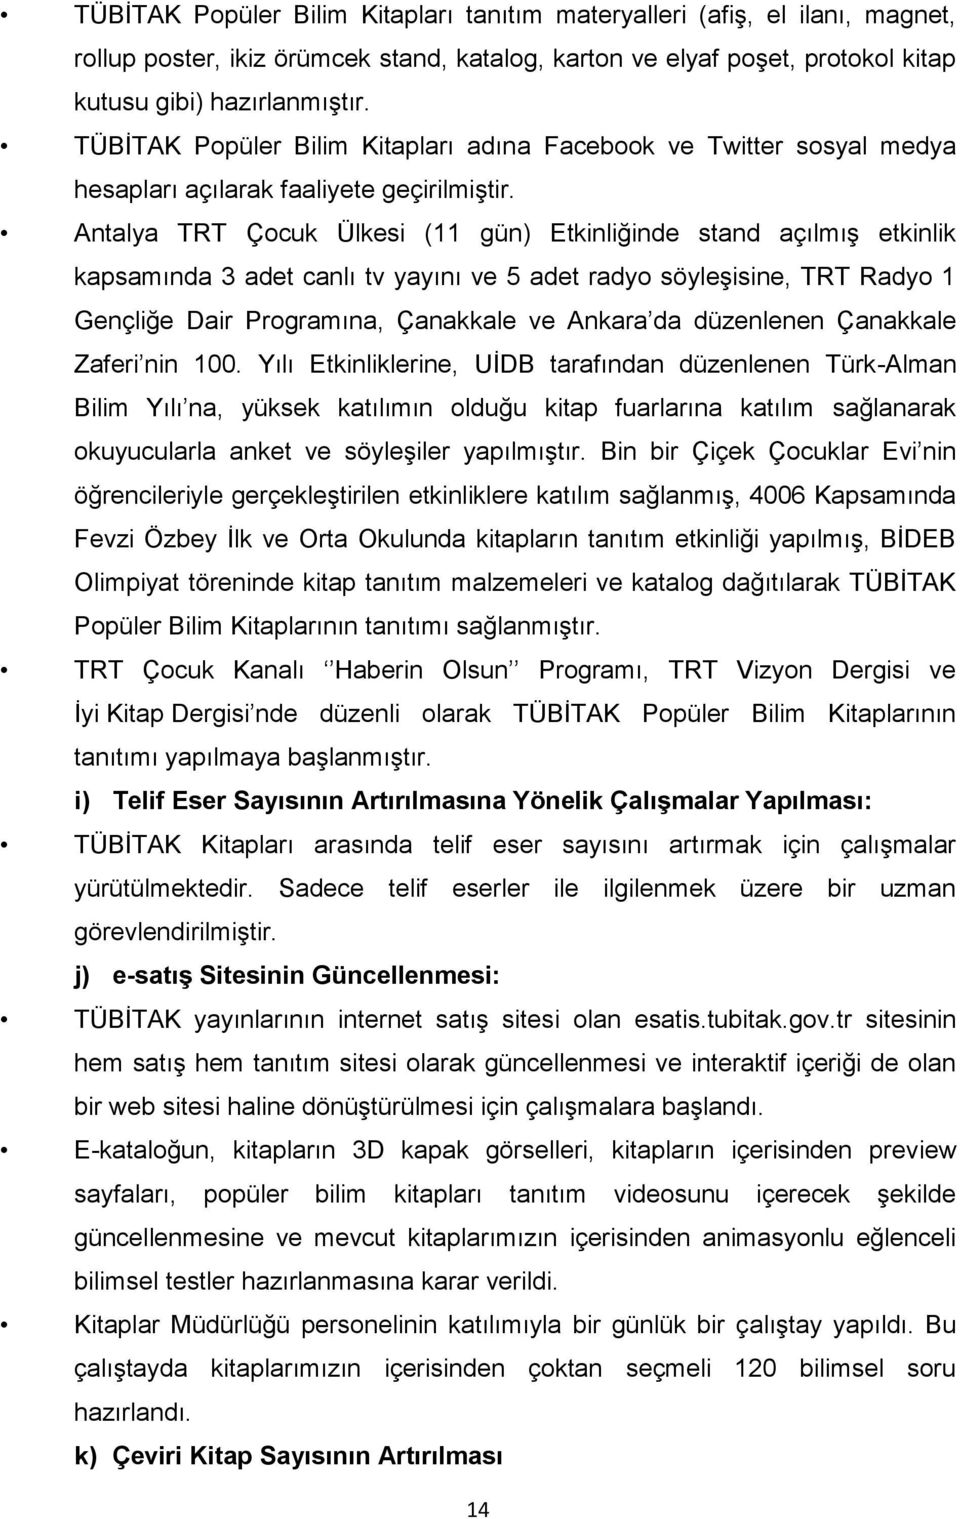 Antalya TRT Çocuk Ülkesi (11 gün) Etkinliğinde stand açılmış etkinlik kapsamında 3 adet canlı tv yayını ve 5 adet radyo söyleşisine, TRT Radyo 1 Gençliğe Dair Programına, Çanakkale ve Ankara da